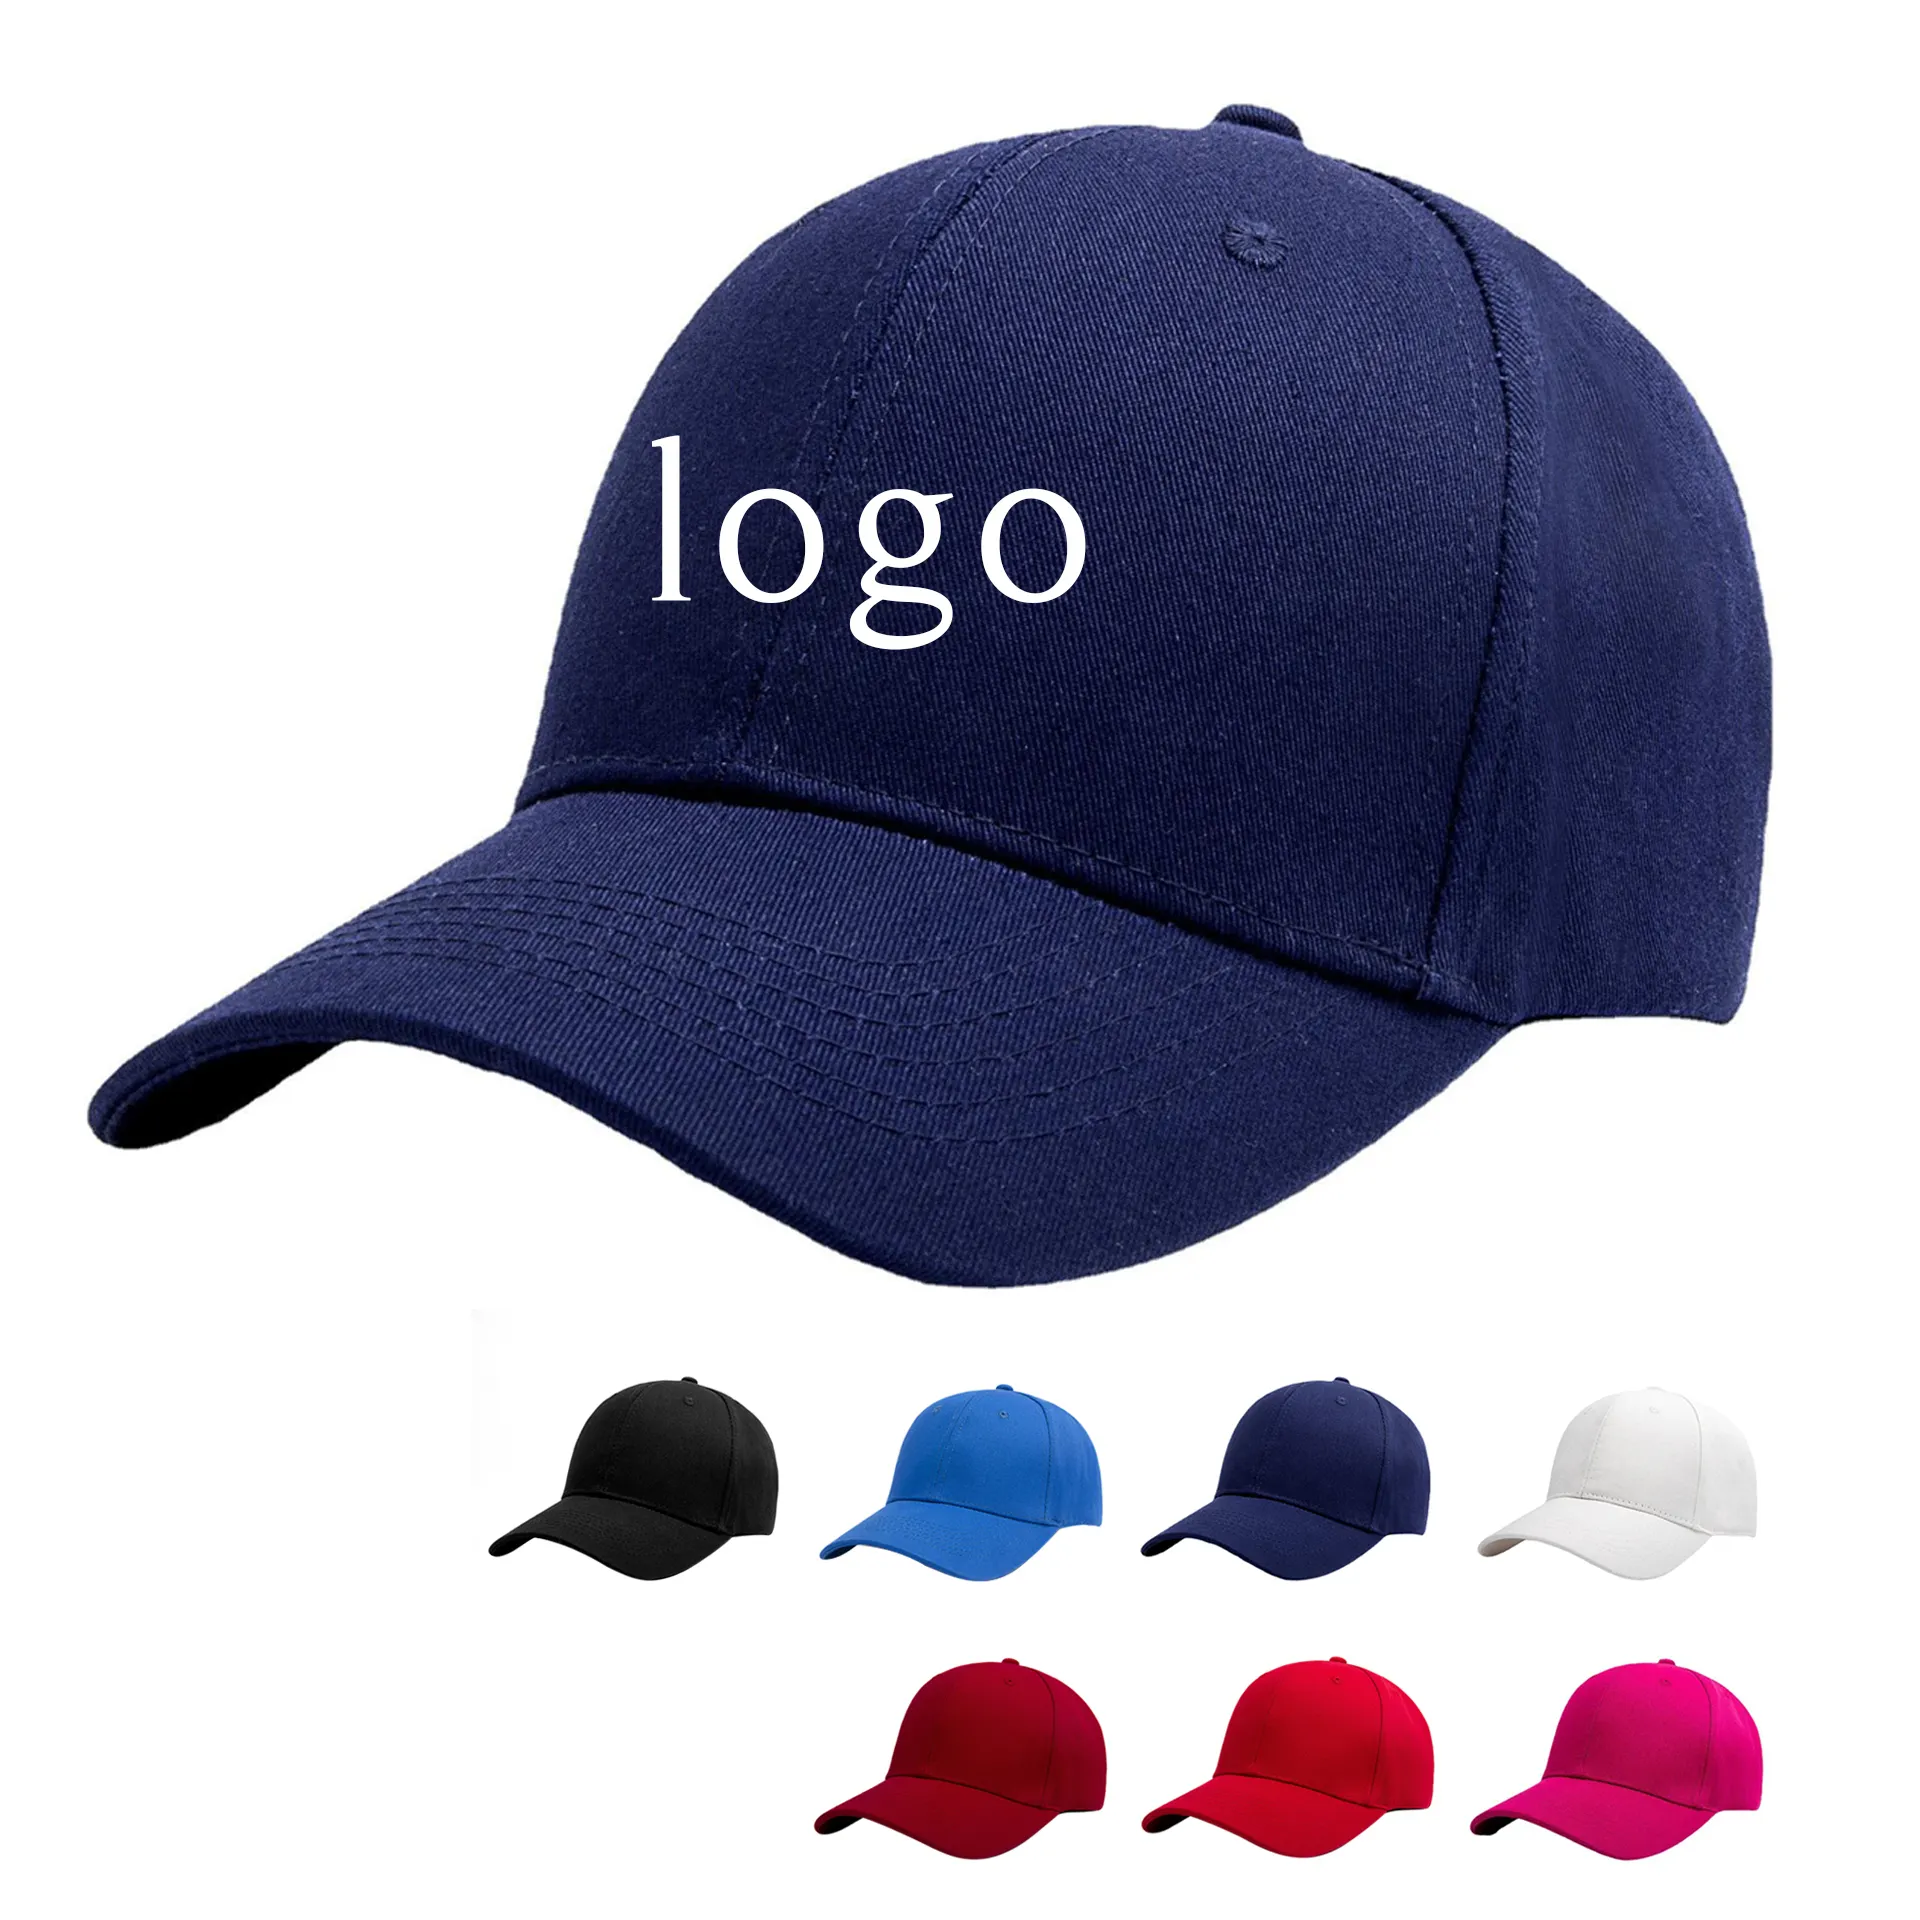 All'ingrosso In magazzino cappello Unisex completo personalizzato blu Navy 3D ricamo promozionale berretto da Baseball per gli uomini